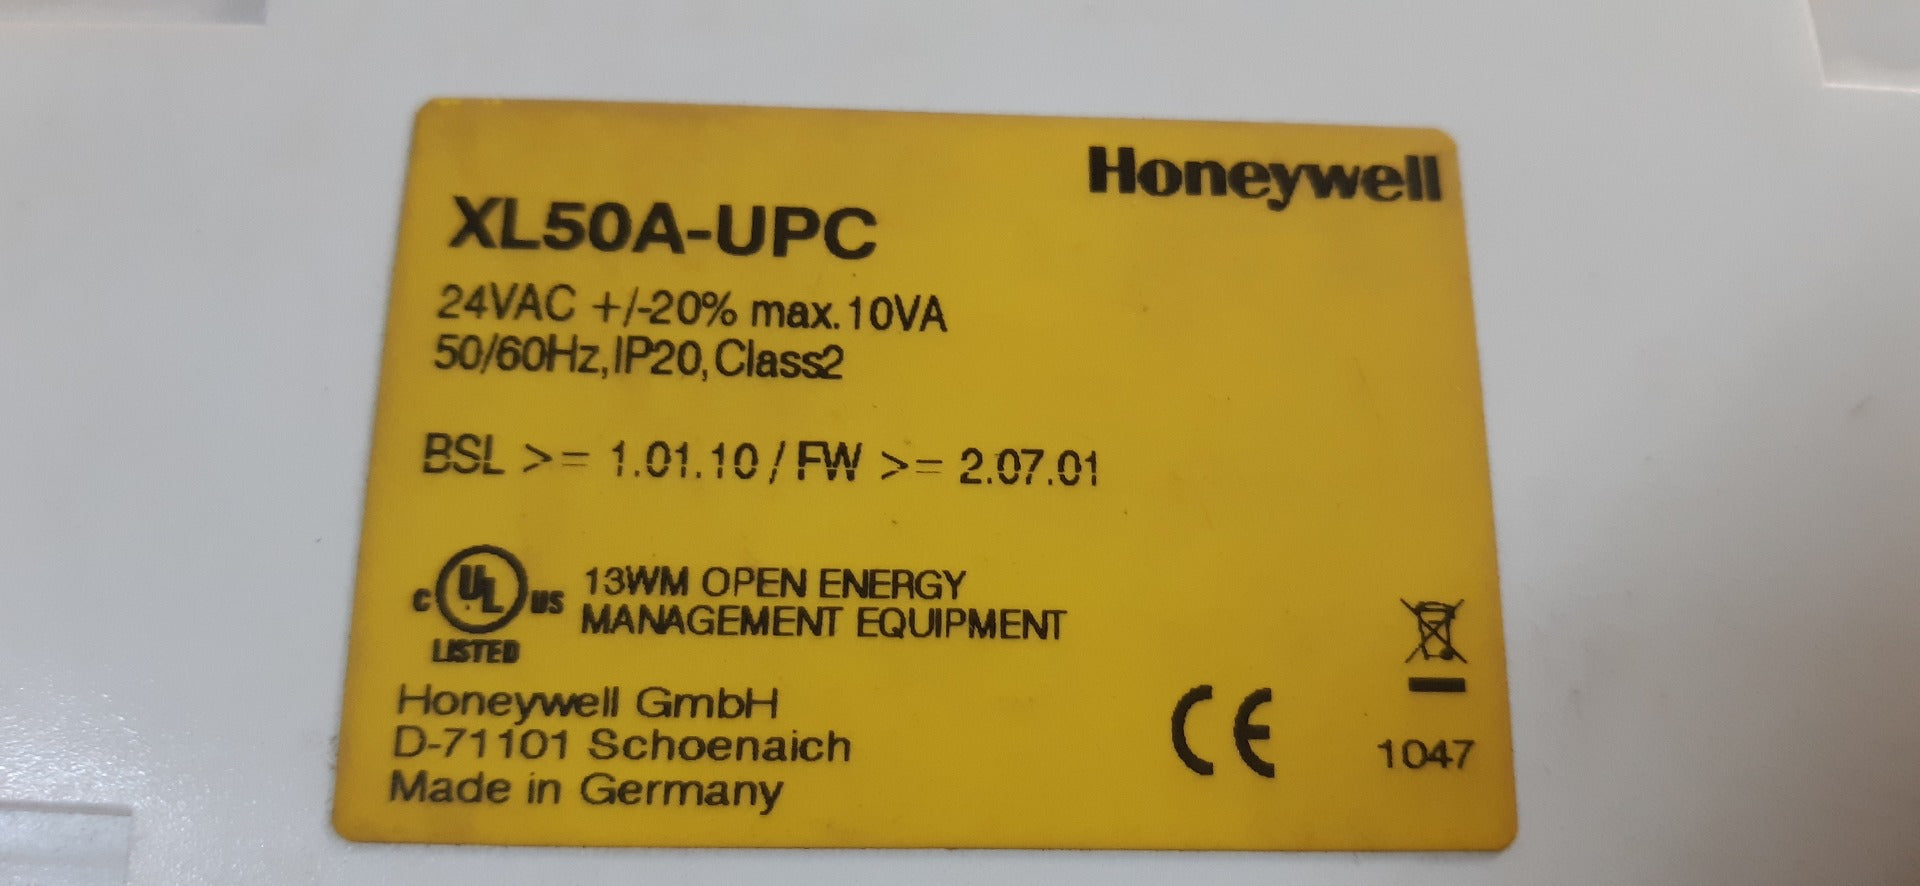 Honeywell xl50a-upc controller